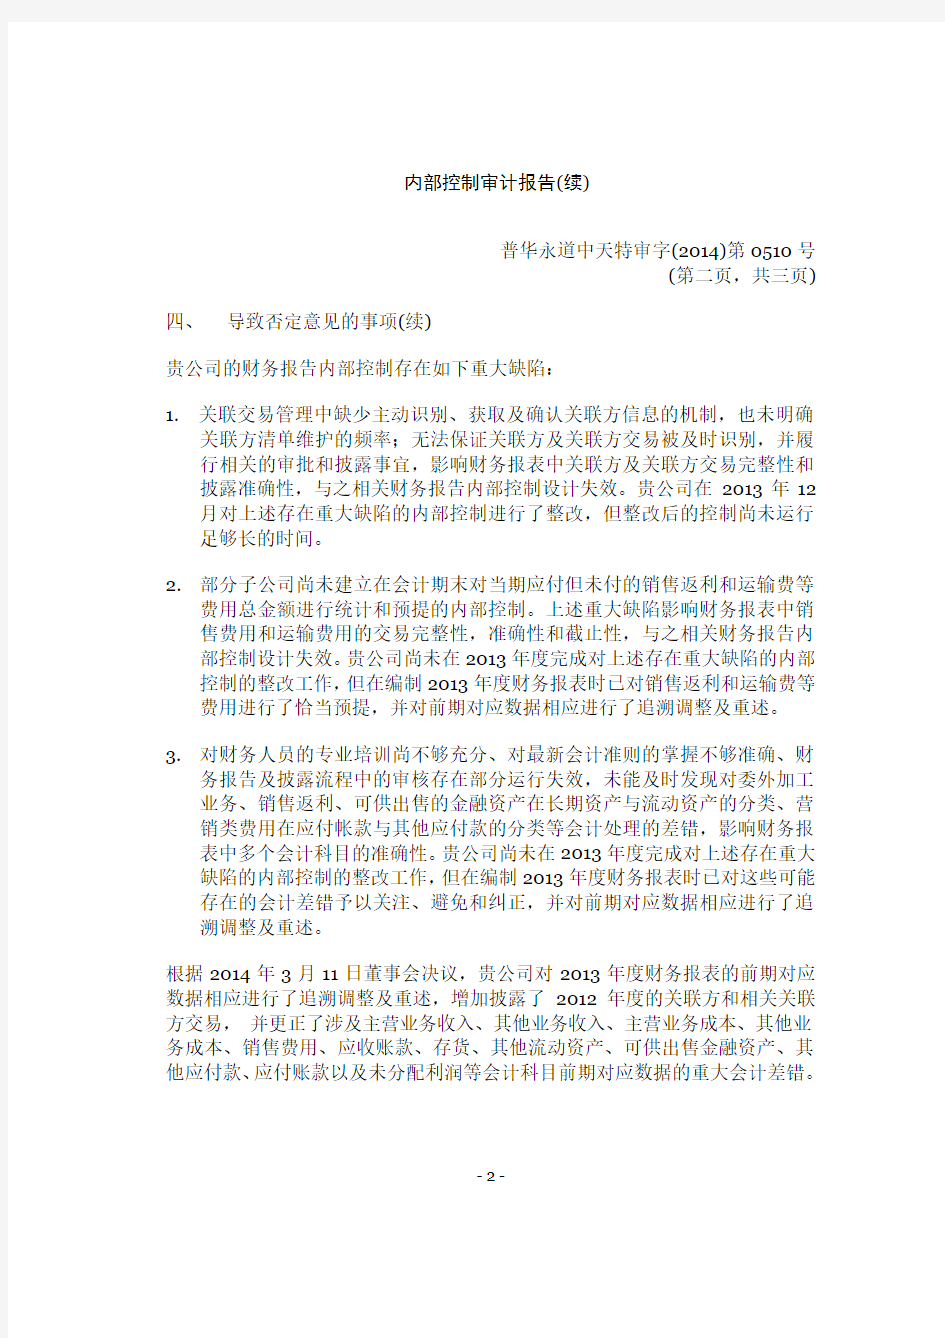 上海家化内部控制审计报告(普华永道)